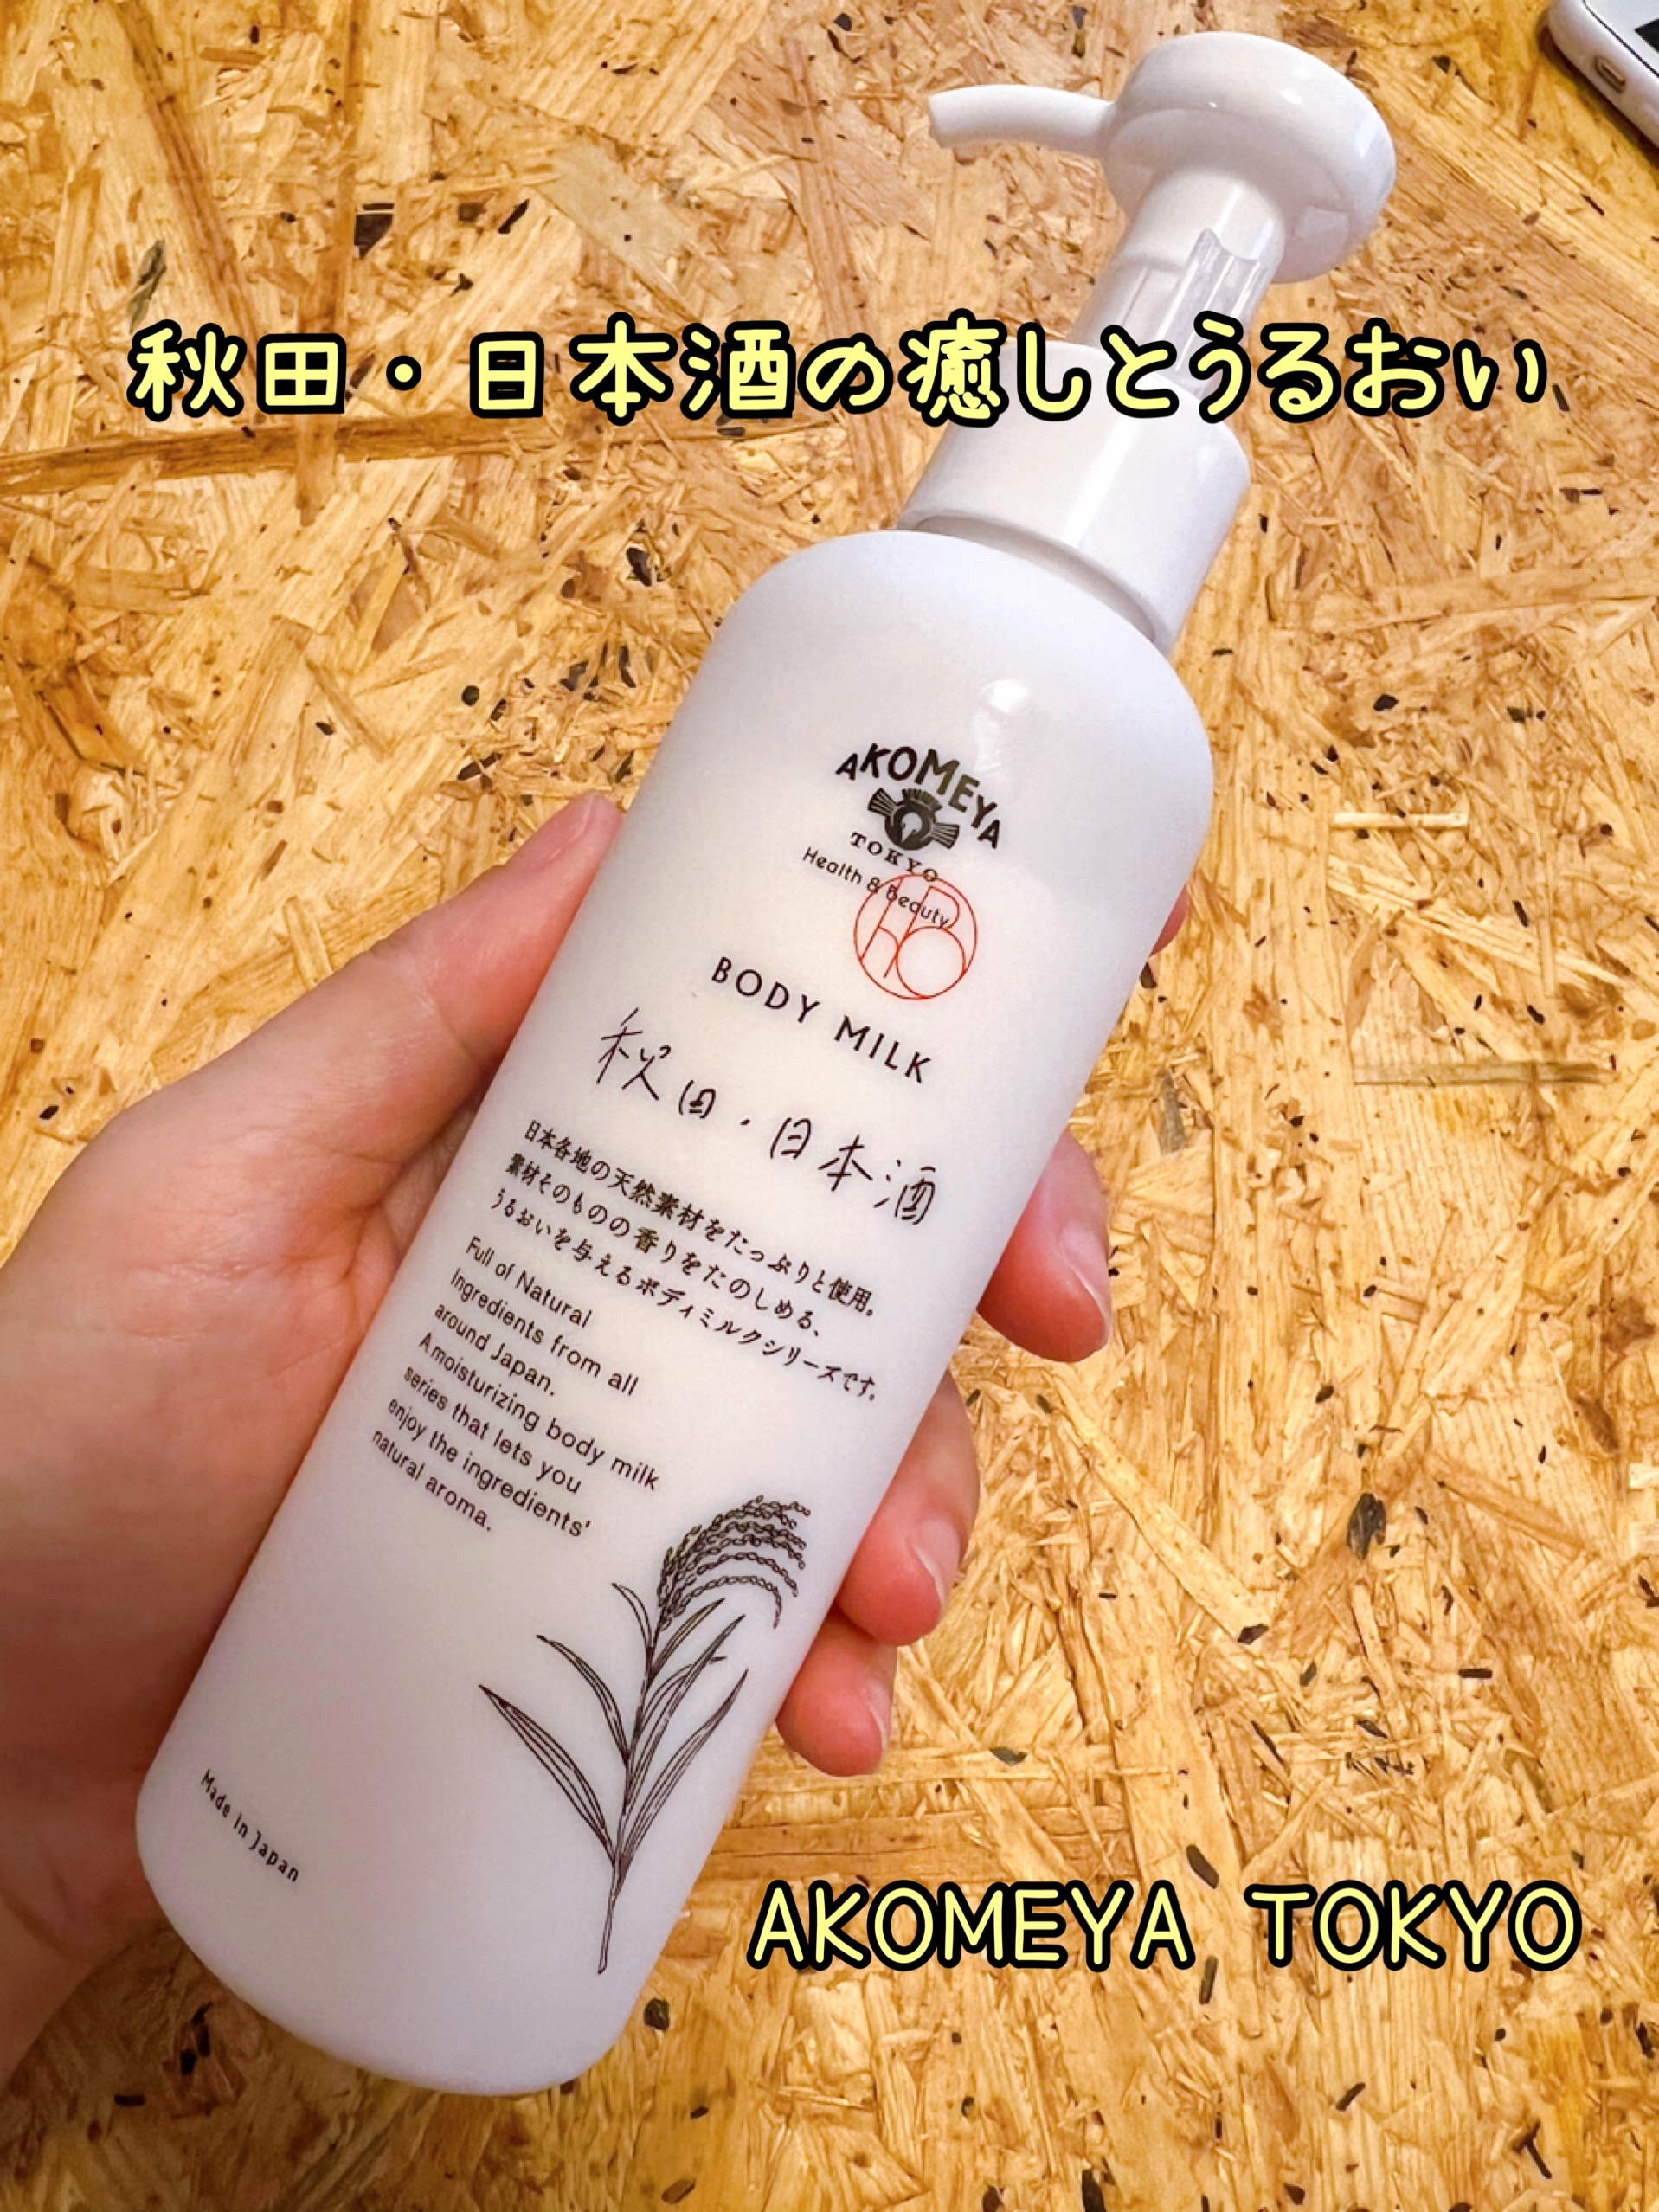 AKOMEYA TOKYO(アコメヤトウキョウ) ボディミルク 秋田・日本酒の良い点・メリットに関するつくねさんの口コミ画像1